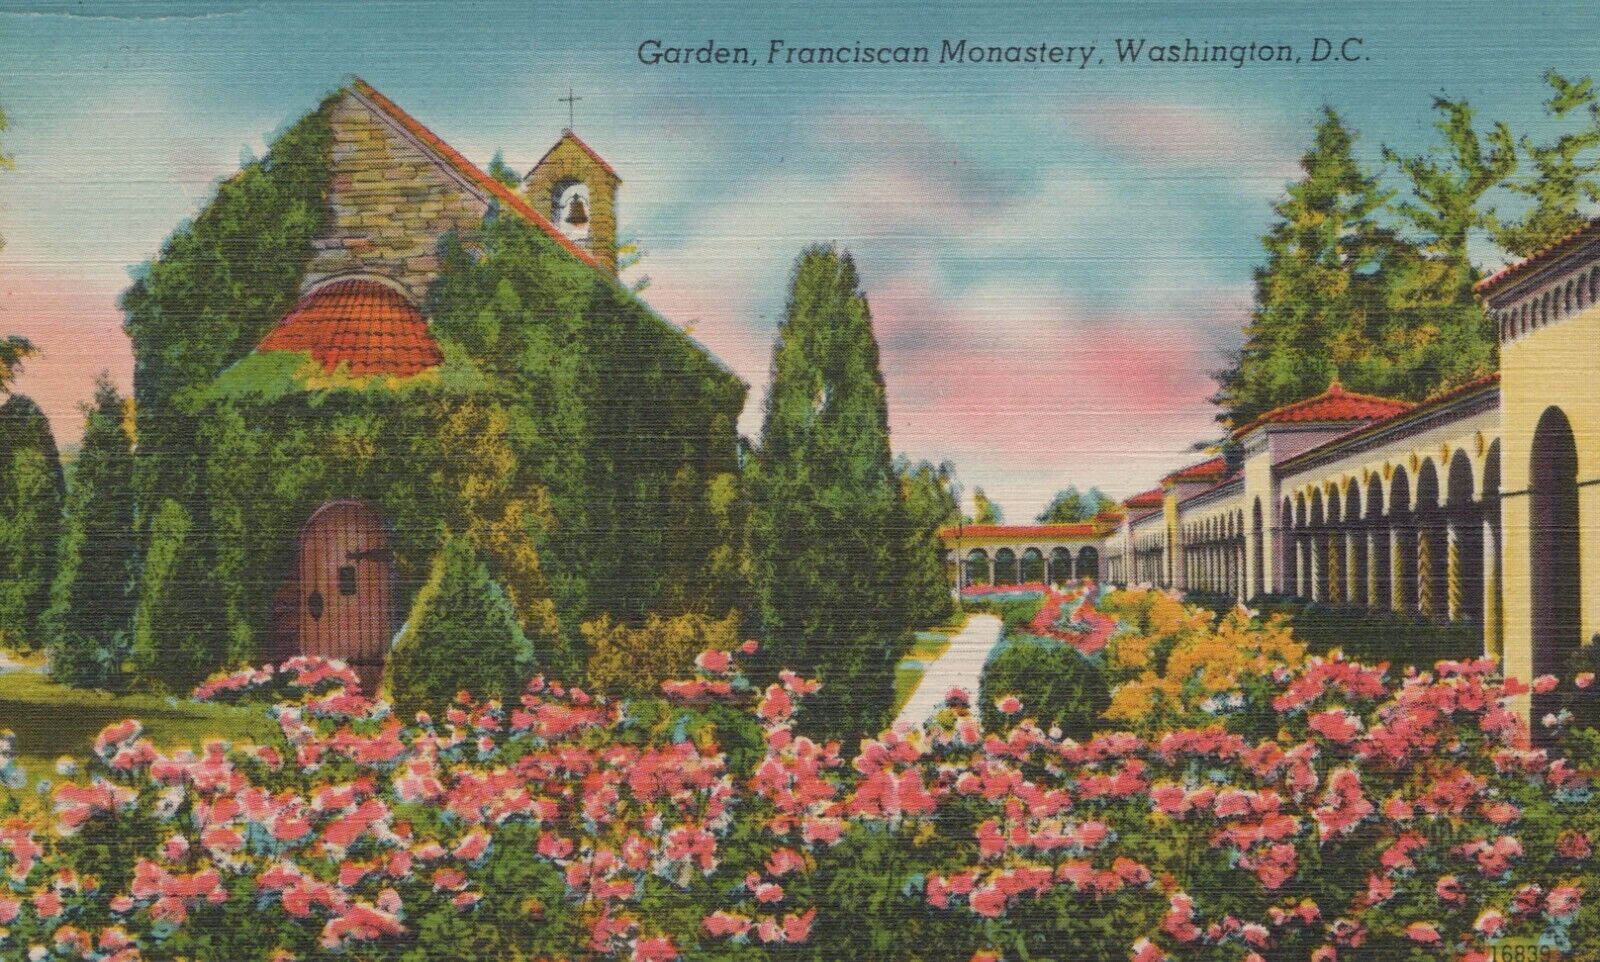 Garden Franciscan Monastery Washington D.C. Vintage Linen Postcard